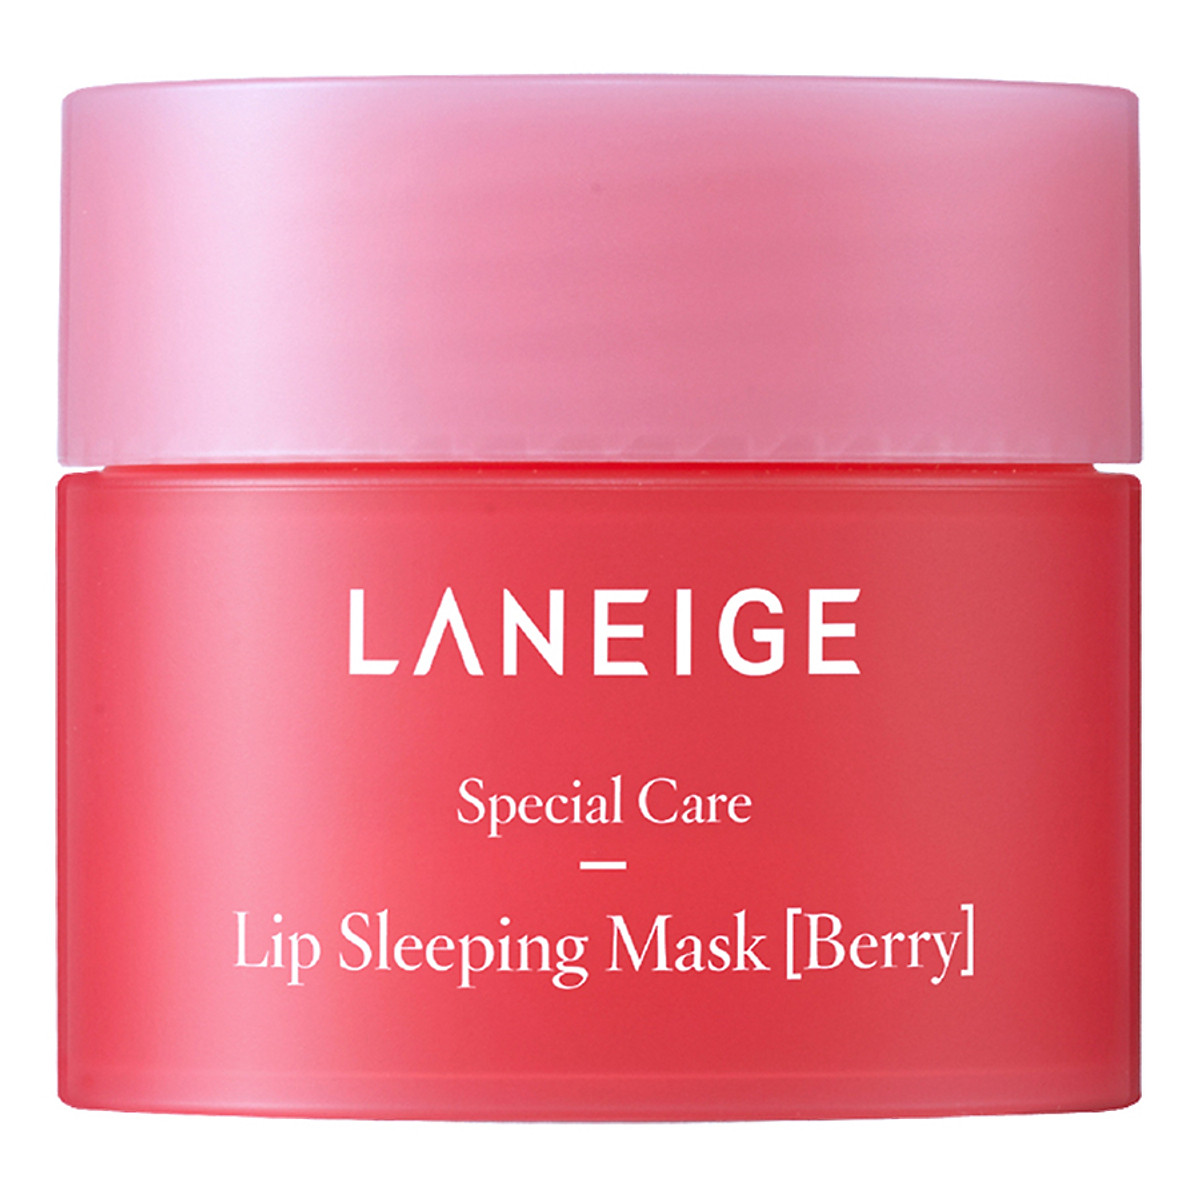 (Đánh giá) Nên mua mặt nạ môi nào tốt nhất 2021: Laneige hay Carenel và Lipice?